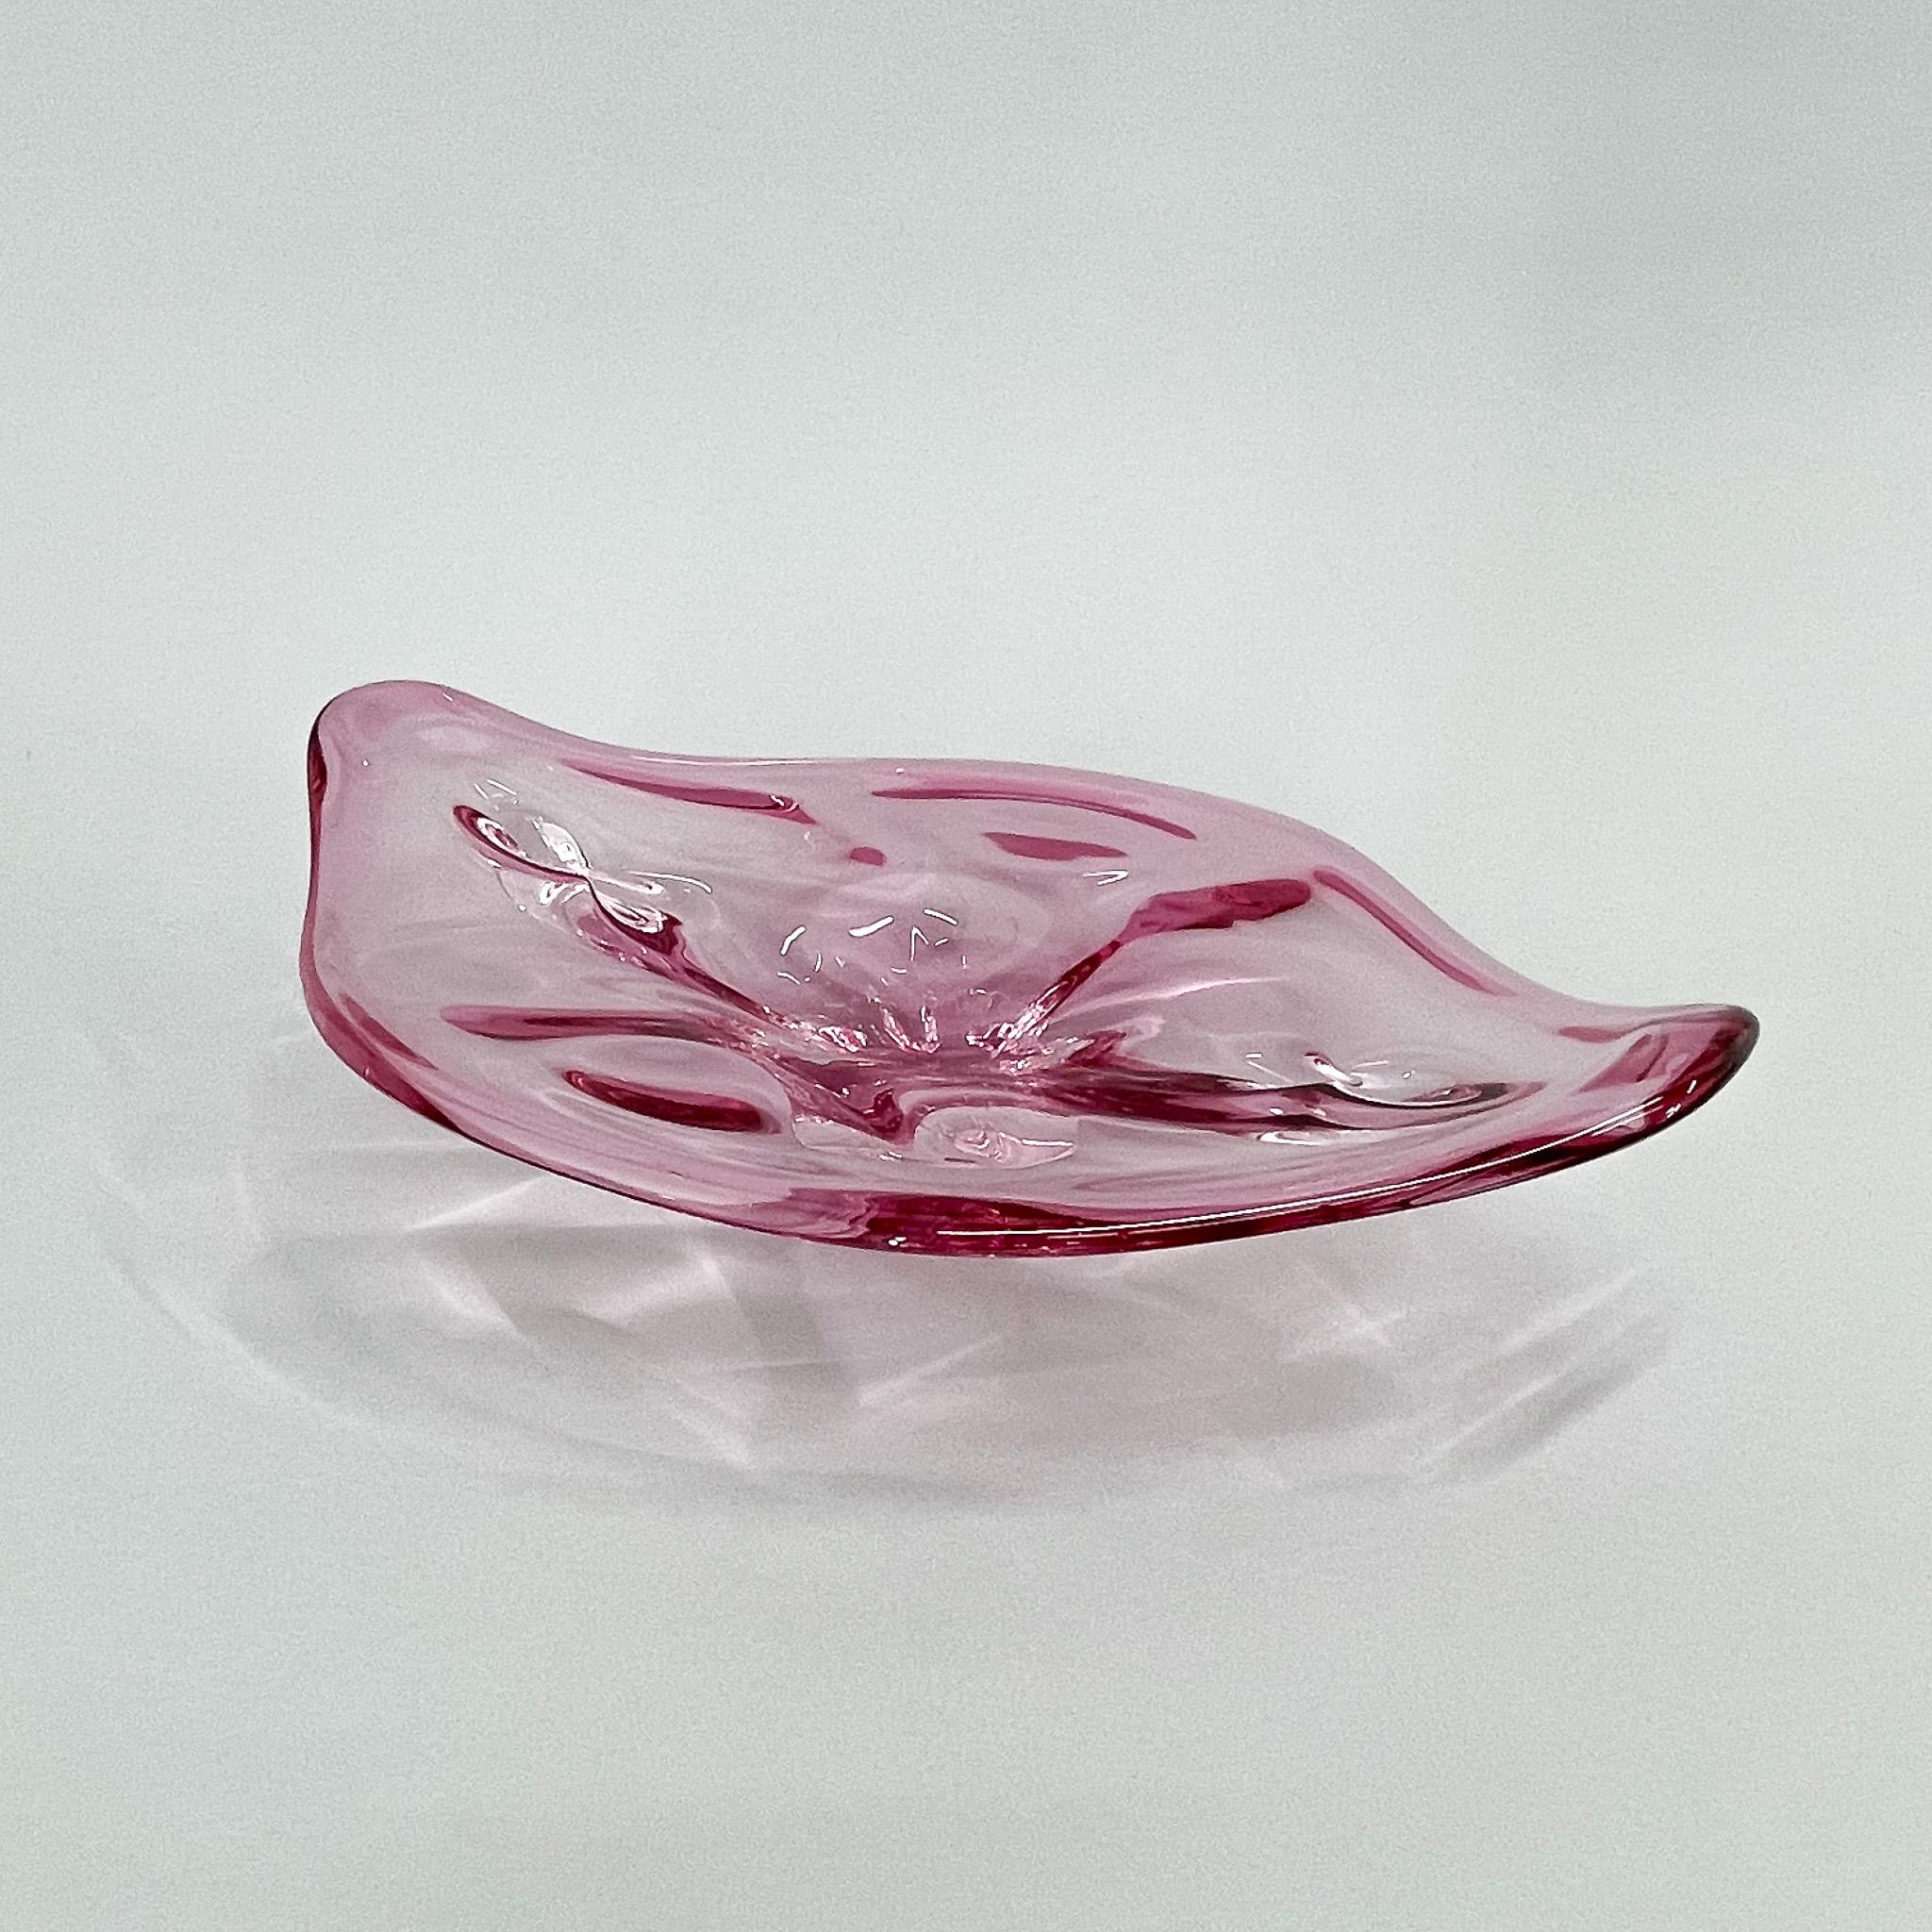 Mid-Century Modern 1960s Czech Art Glass Bowl by Josef Hospodka for Chribska Glassworks For Sale